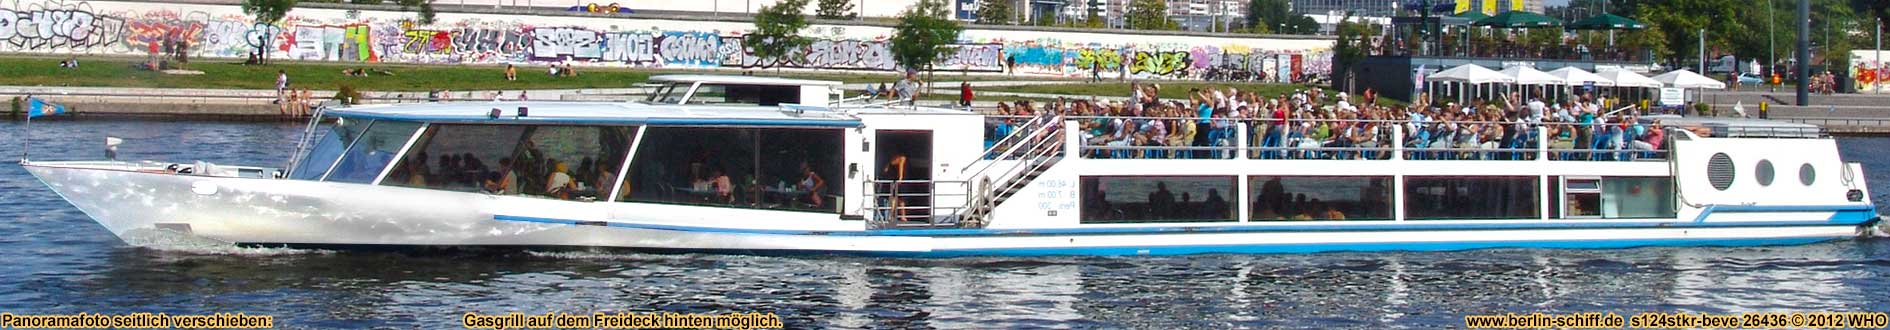 Berlin Schiff mieten Grillschiff Partyschiff Partyboot Grillboot Cabrioschiff Spree